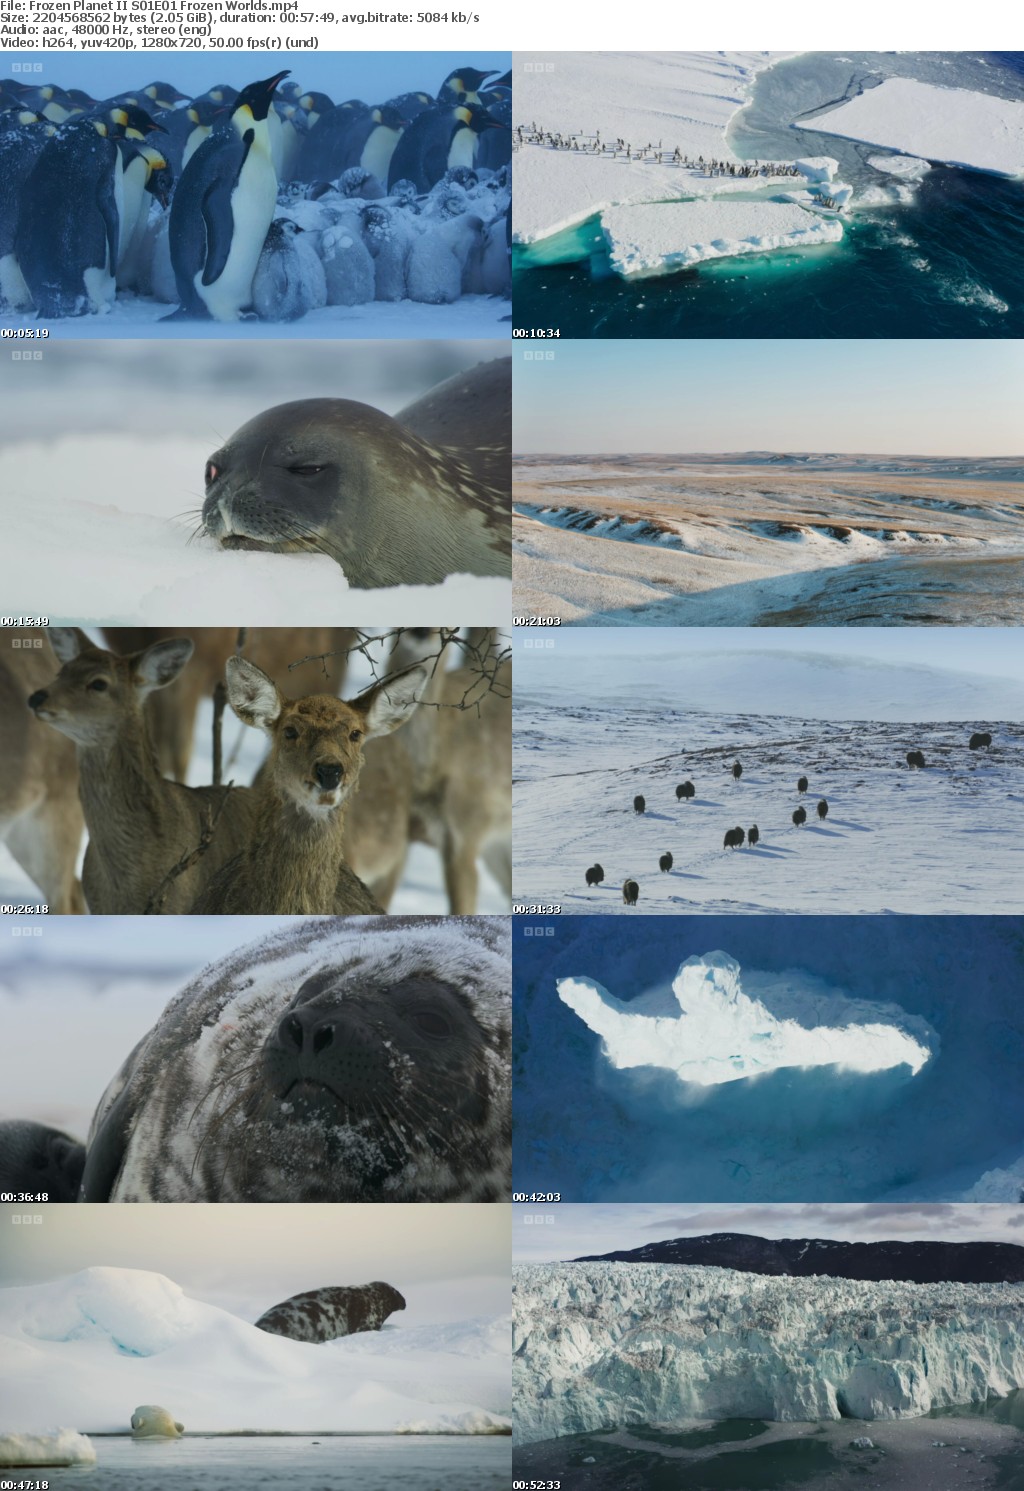 Frozen Planet II S01E01 Frozen Worlds (1280x720p HD, 50fps, soft Eng subs)